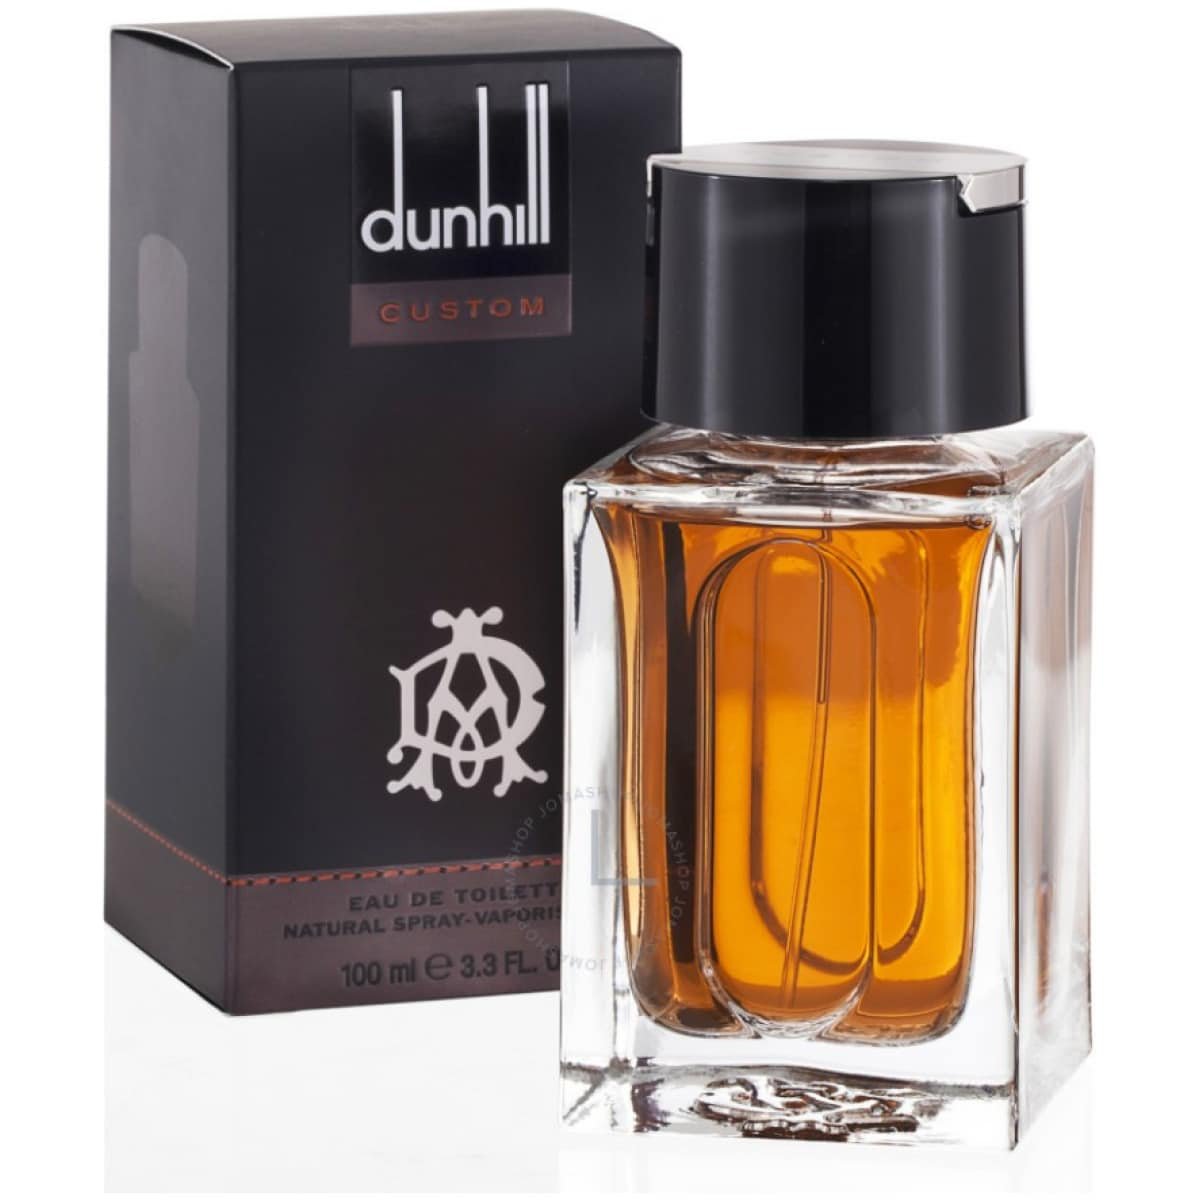 Dunhill Custom EDT Perfume For Men 100 ml